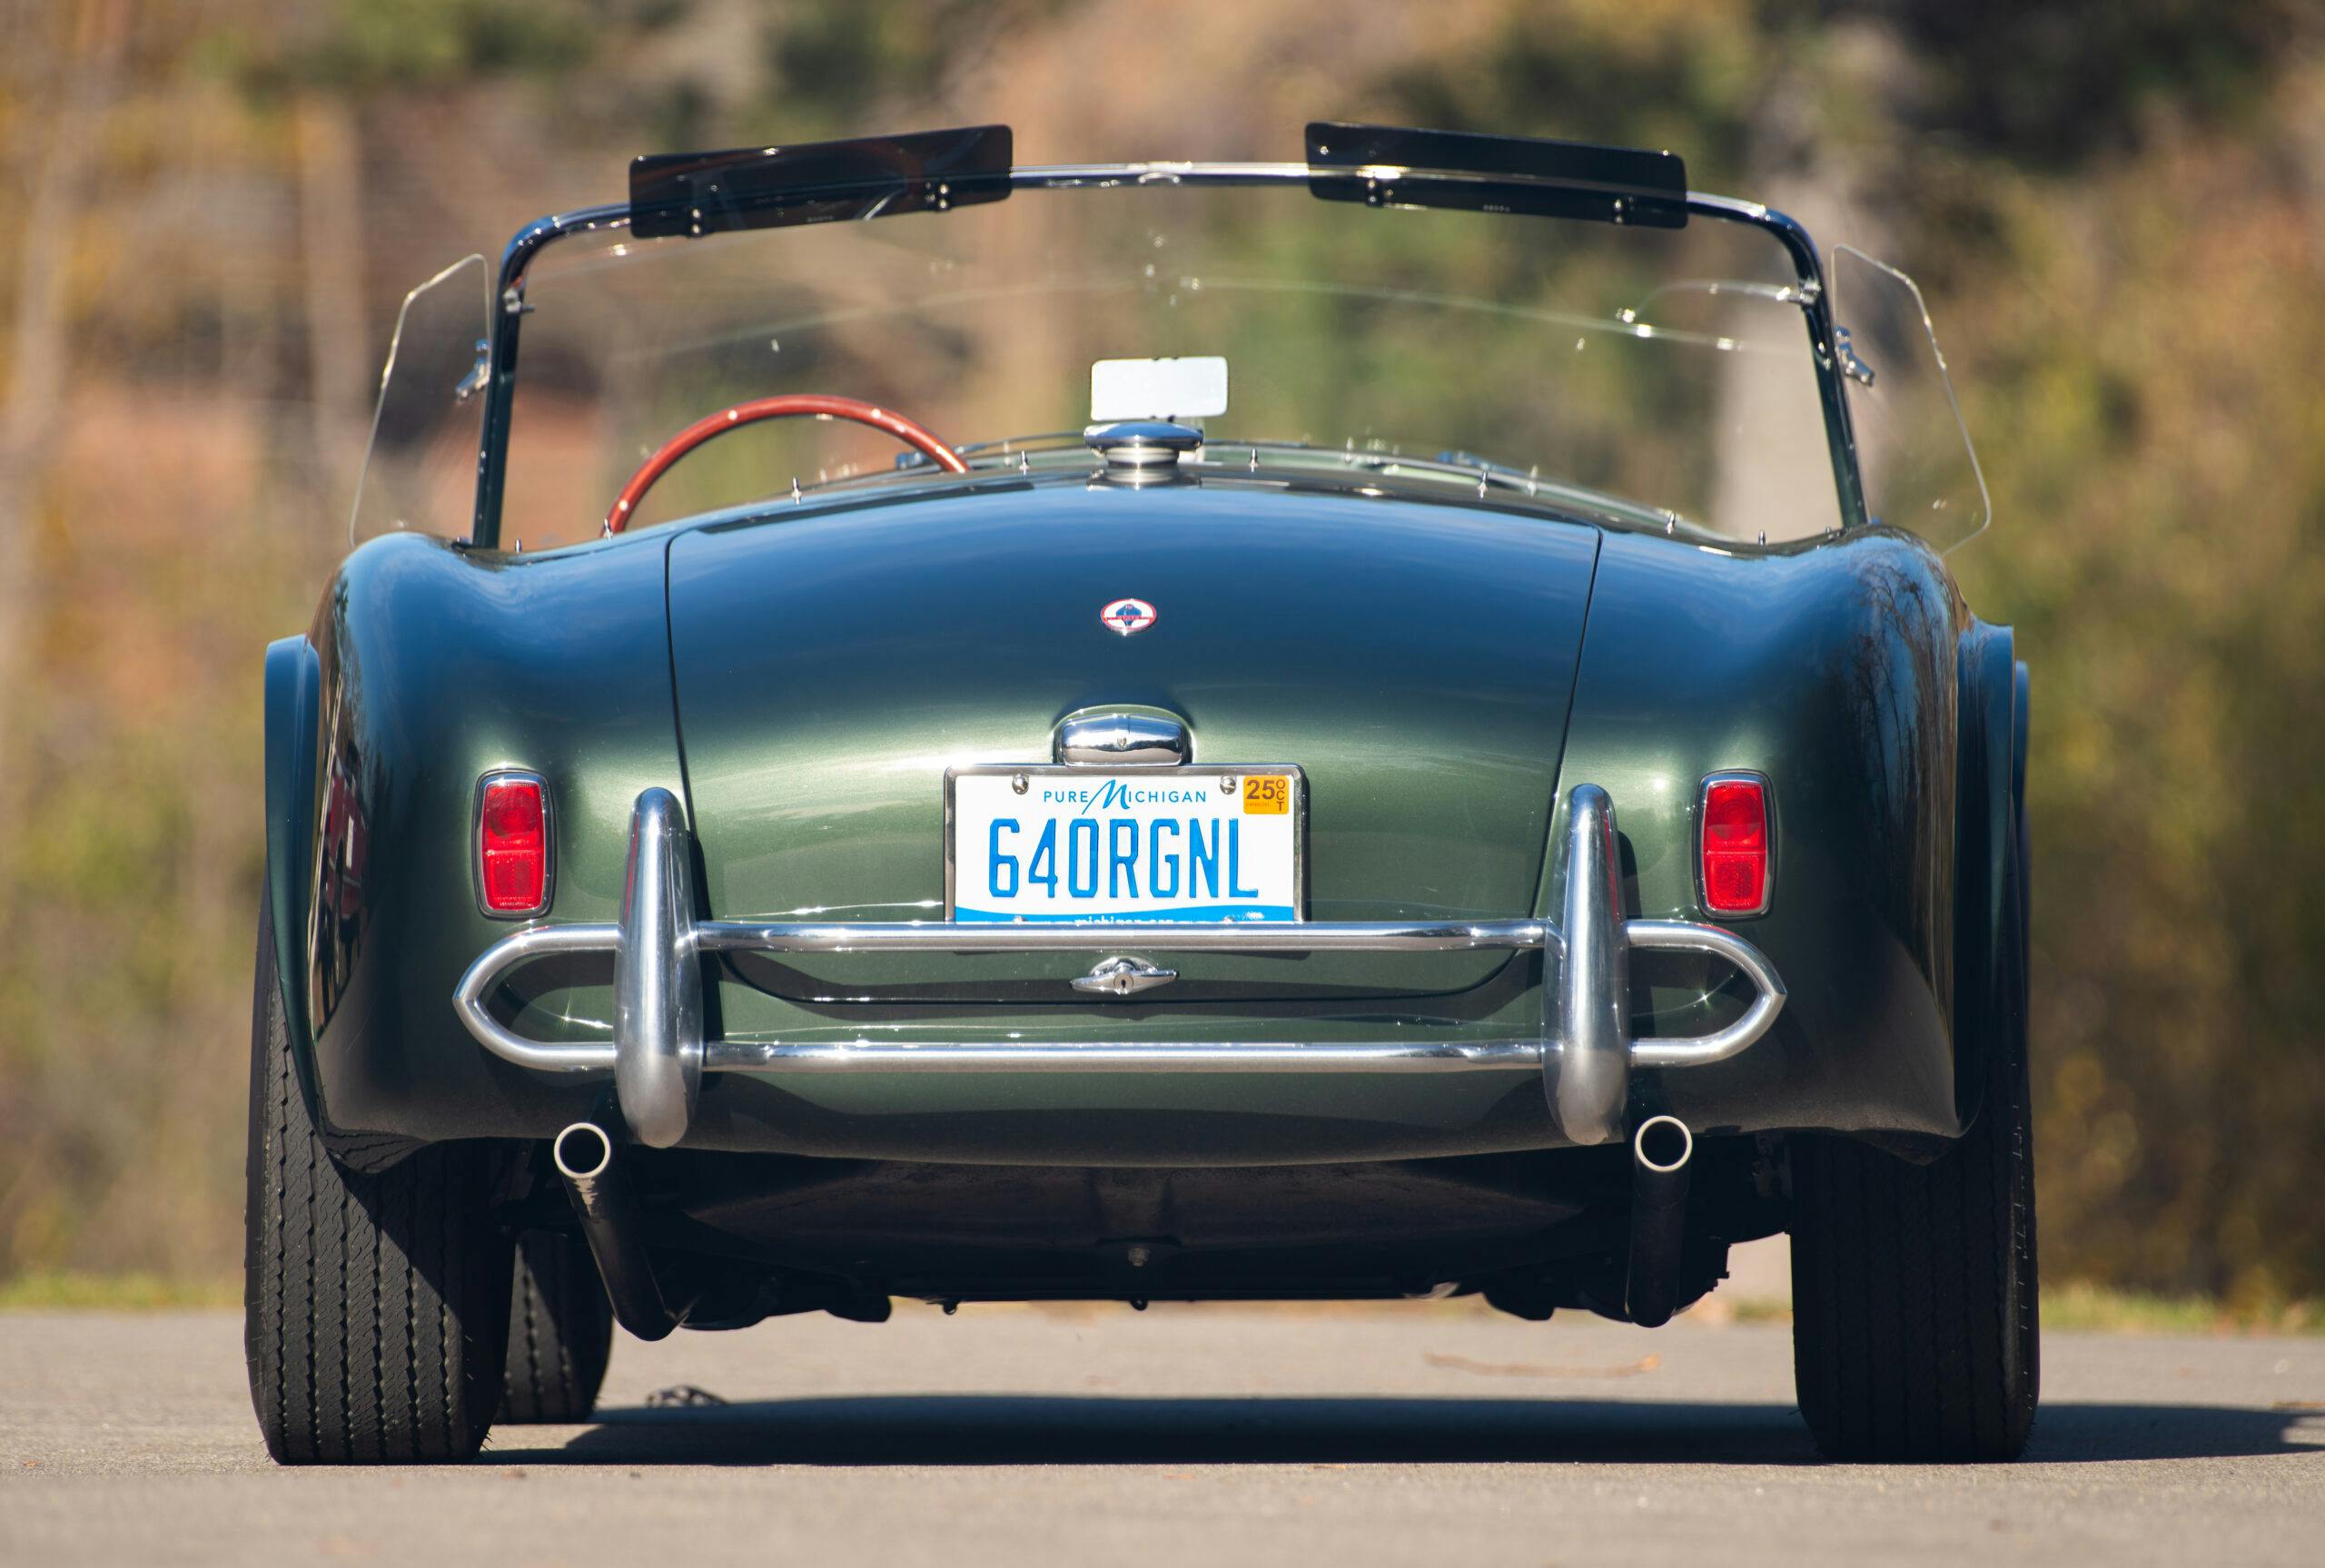 1964 Shelby Cobra rear